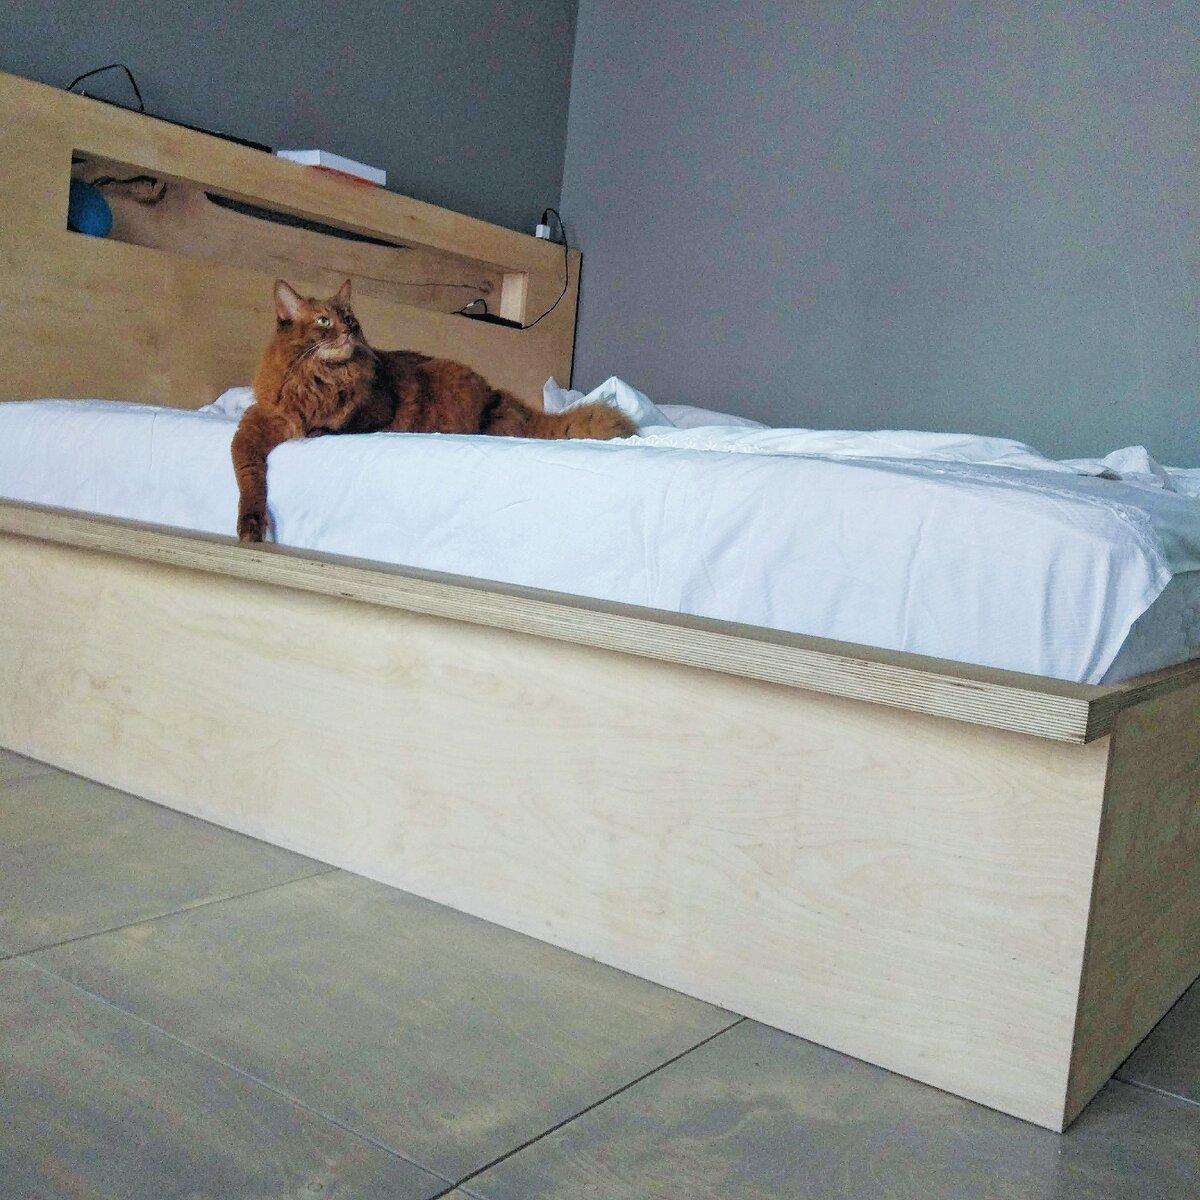 Как выбрать кровать без помощи продавца консультанта